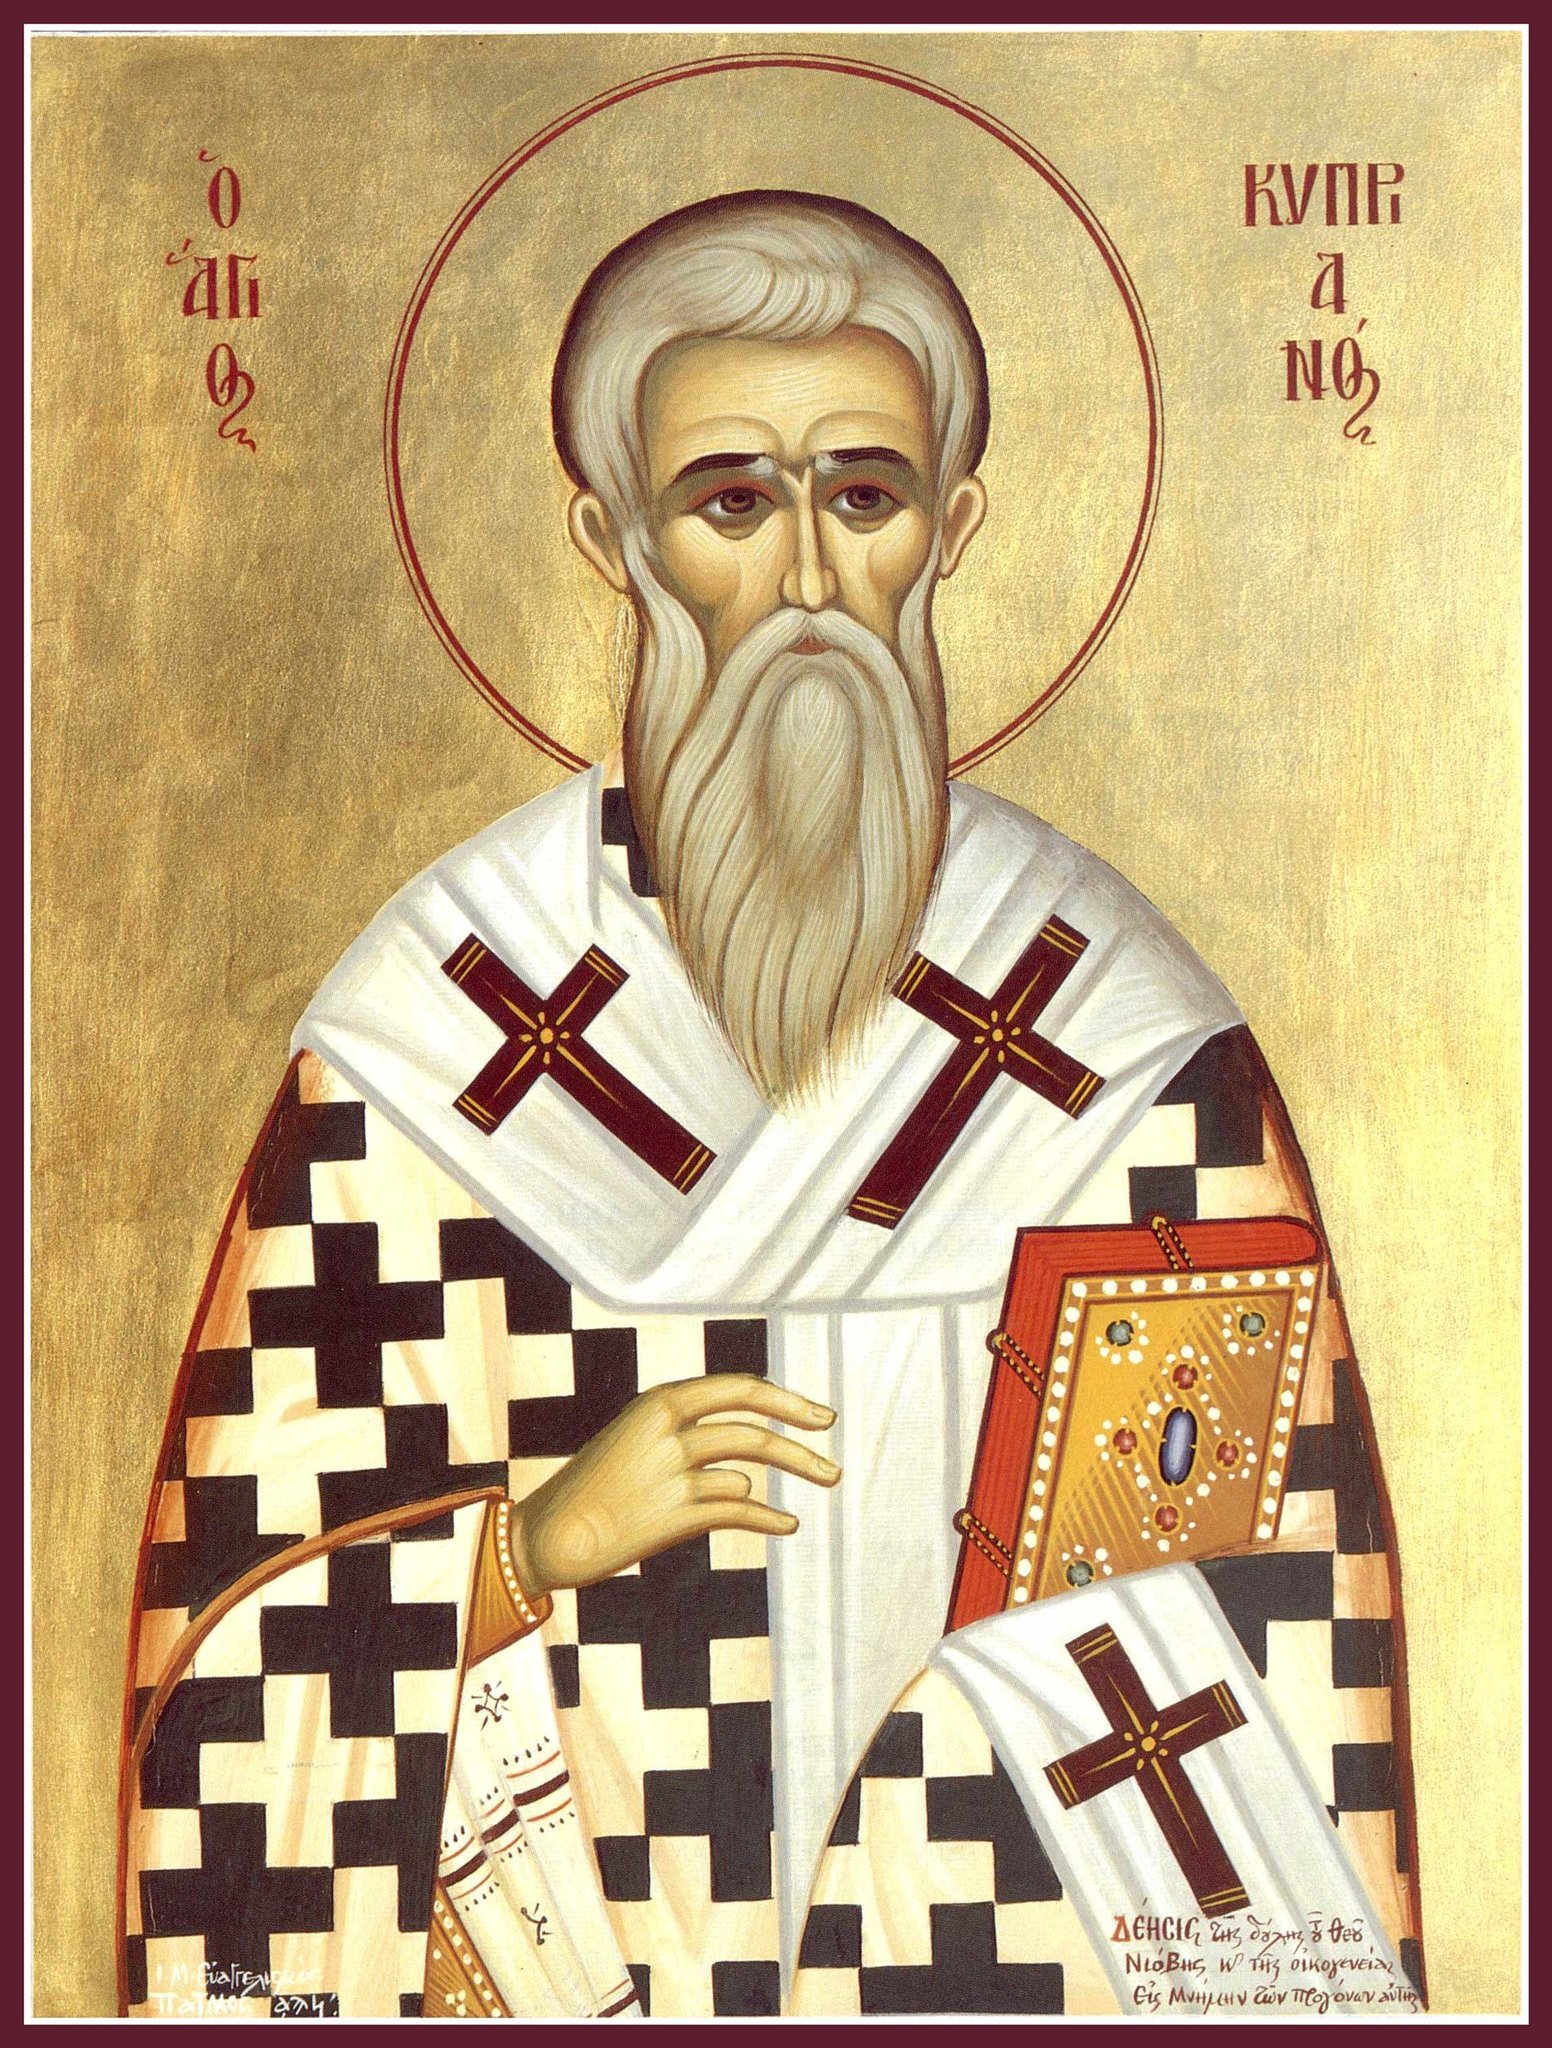 Bisschop Kipriyan van Antiochië gebed